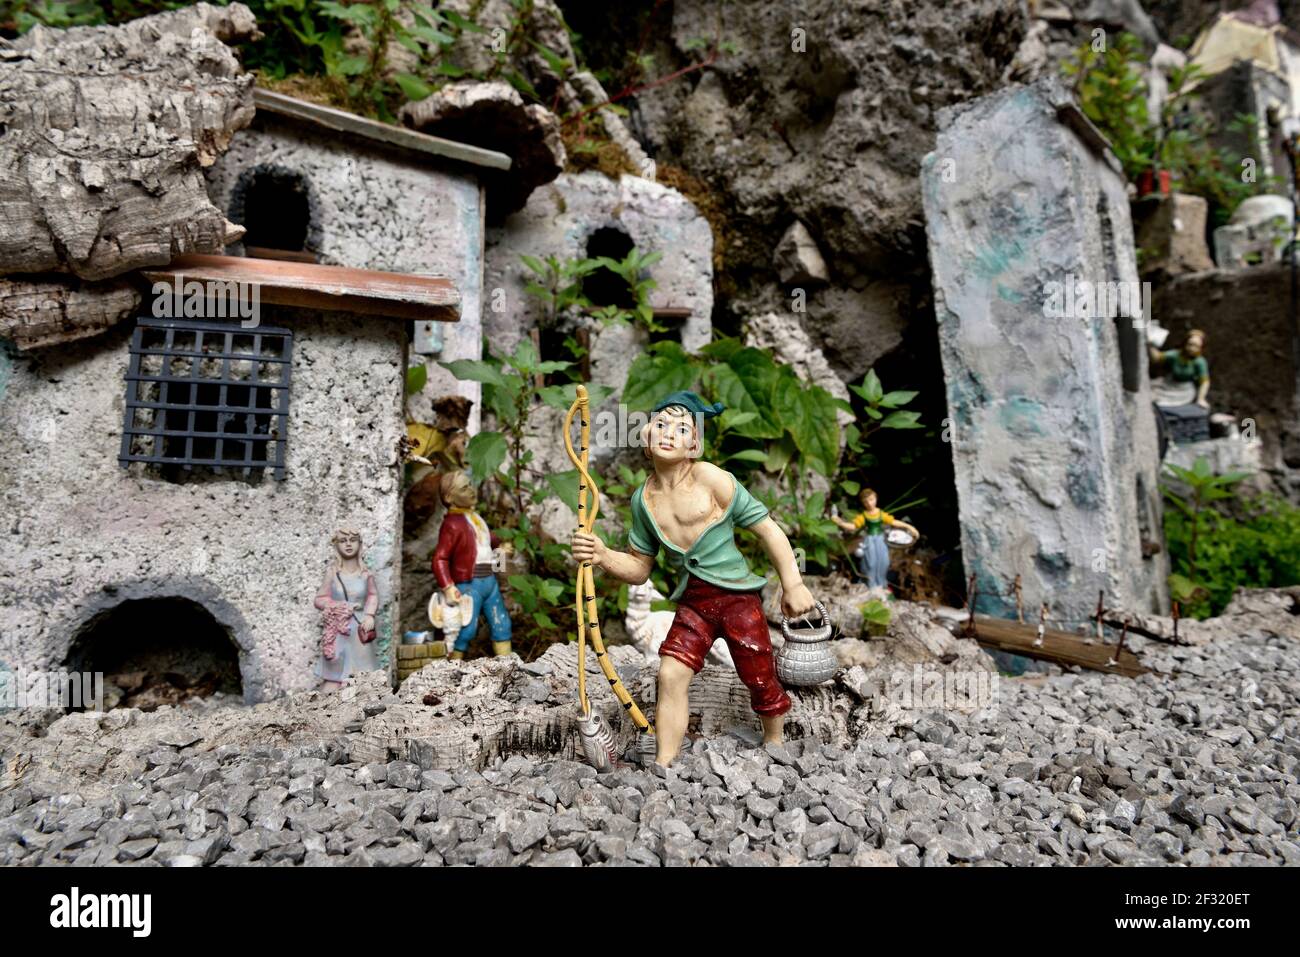 Geografía / viajes, Italia, Campania, figuras en miniatura en el centro de la ciudad de Amalfi, costa de Amalfi, costo, Derechos adicionales-liquidación-Información-no-disponible Foto de stock